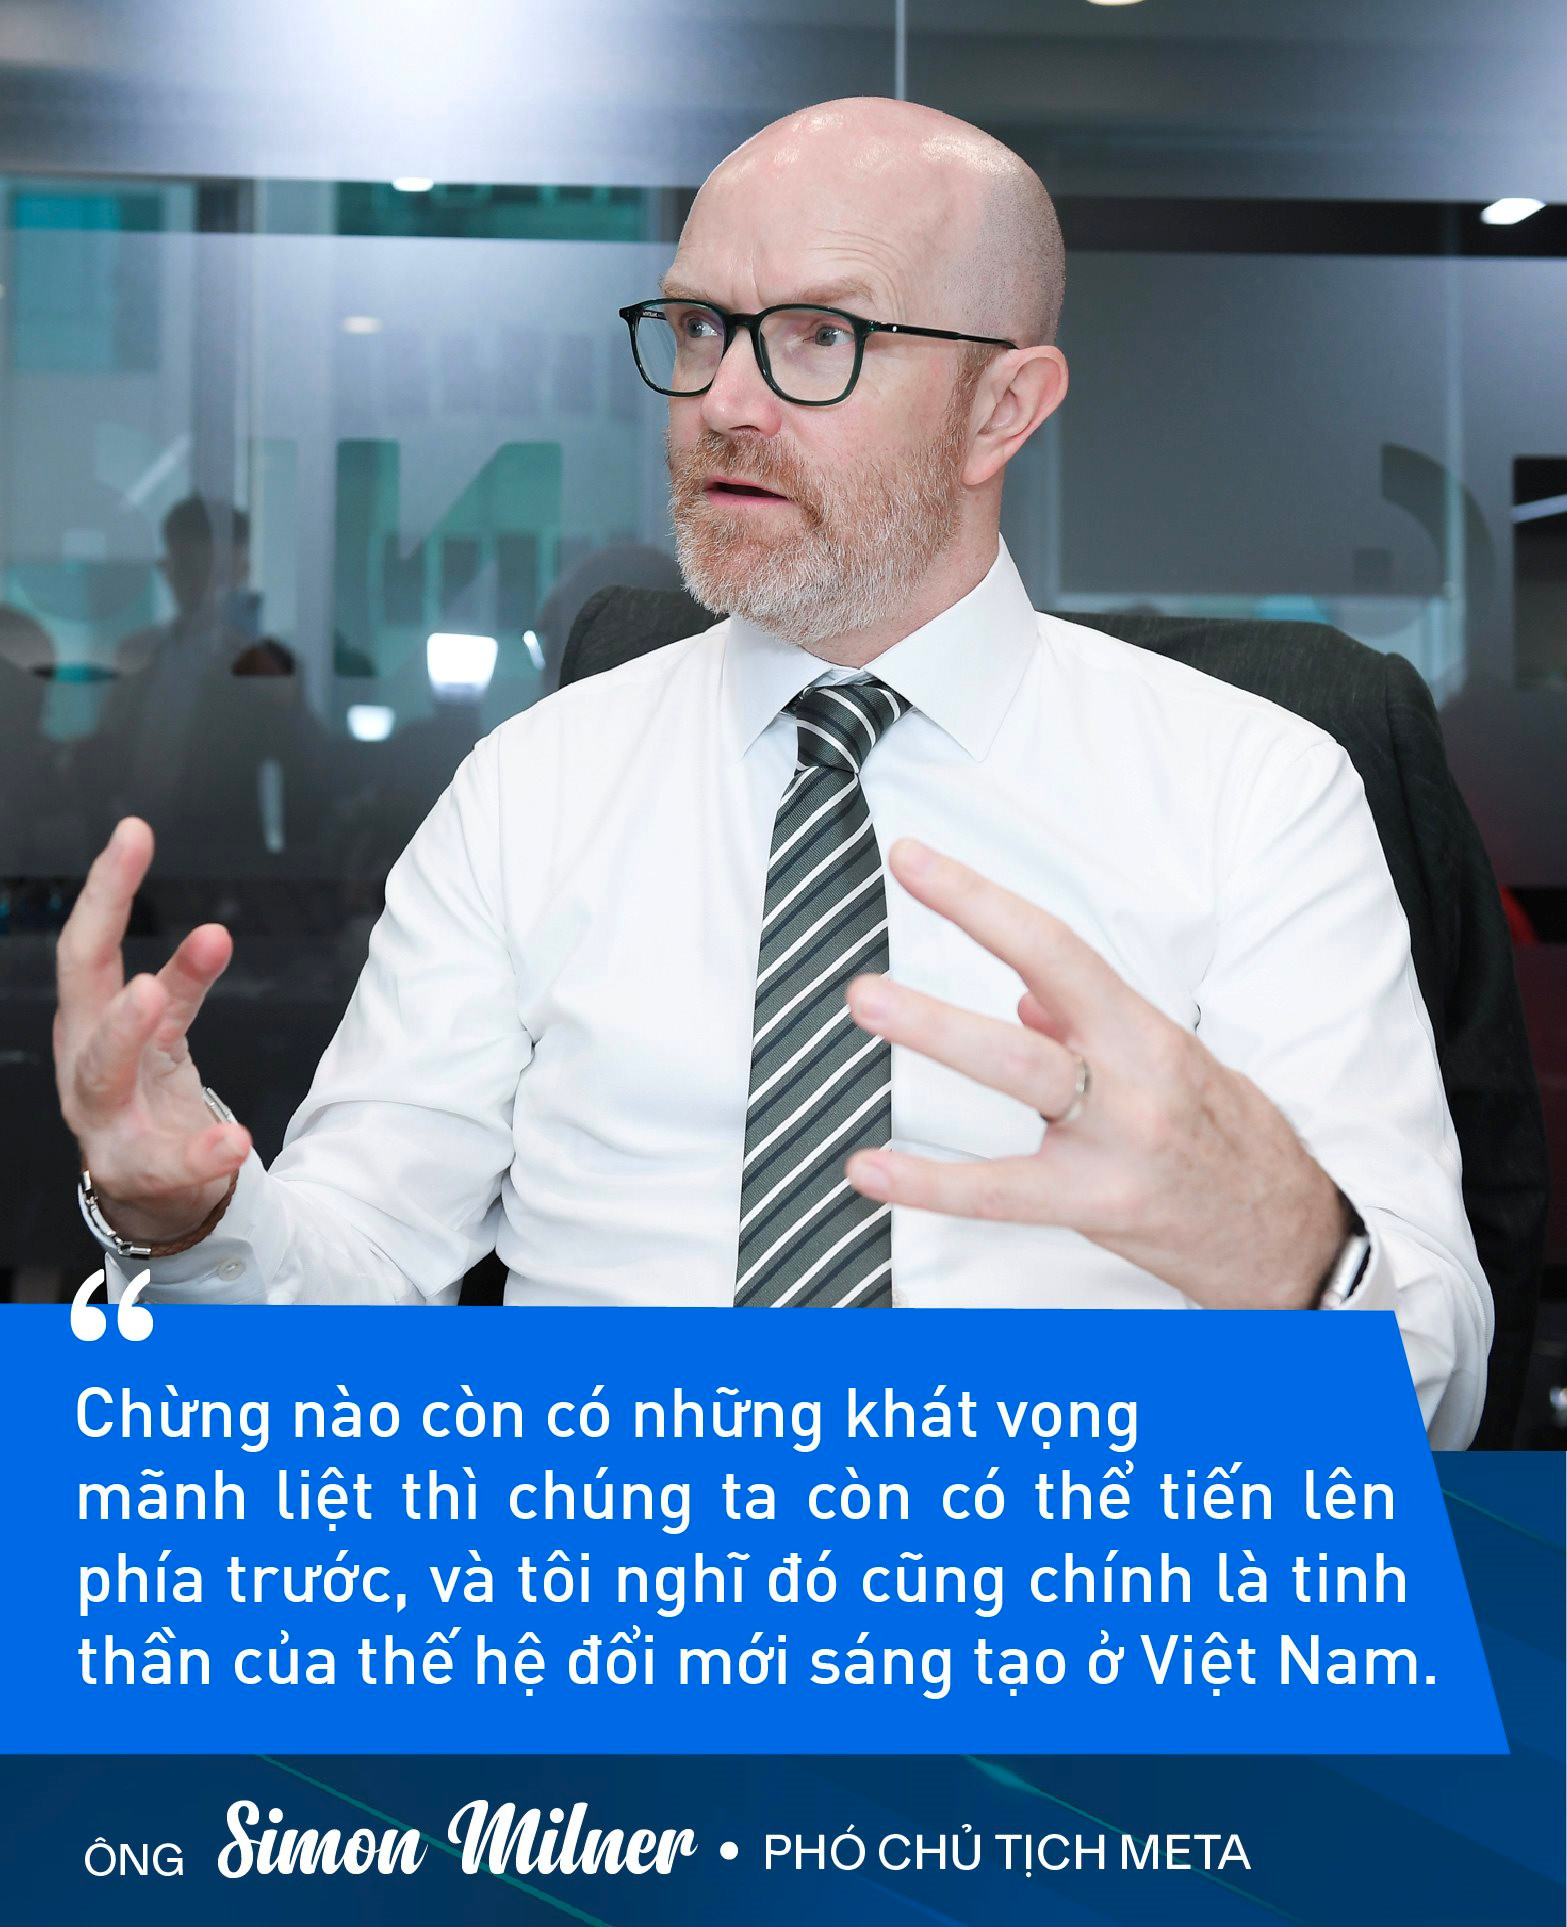 Phó Chủ tịch Meta: Việt Nam có đủ điều kiện để xây dựng thành công nền kinh tế số cũng như lĩnh vực đổi mới sáng tạo trong tương lai - Ảnh 2.